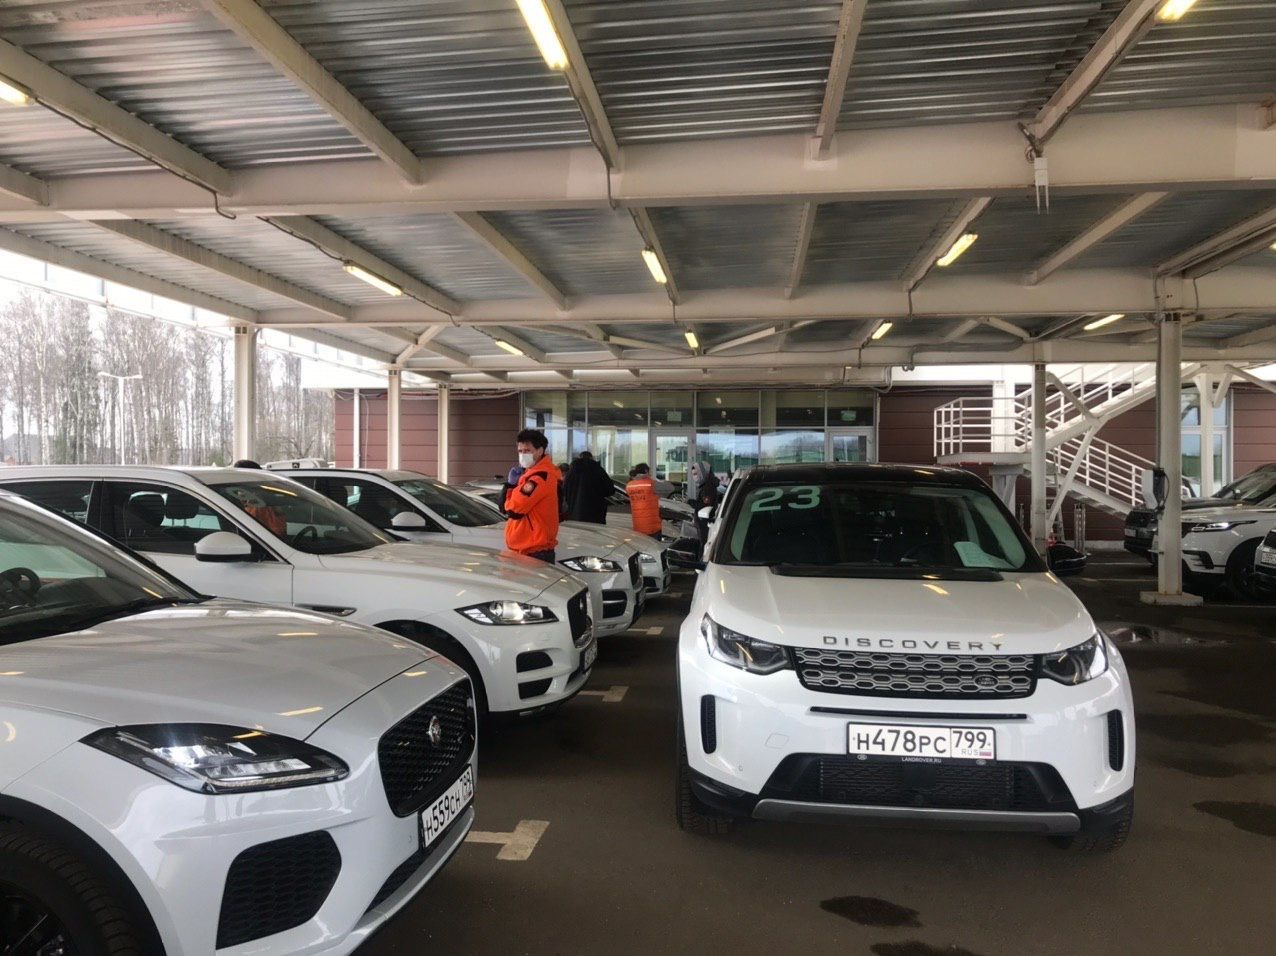 Jaguar Land Rover continúa sus esfuerzos para apoyar la lucha contra el coronavirus proporcionando 150 vehículos adicionales a nivel mundial, completando un total de 312 vehículos suministrados para los servicios de primera instancia.